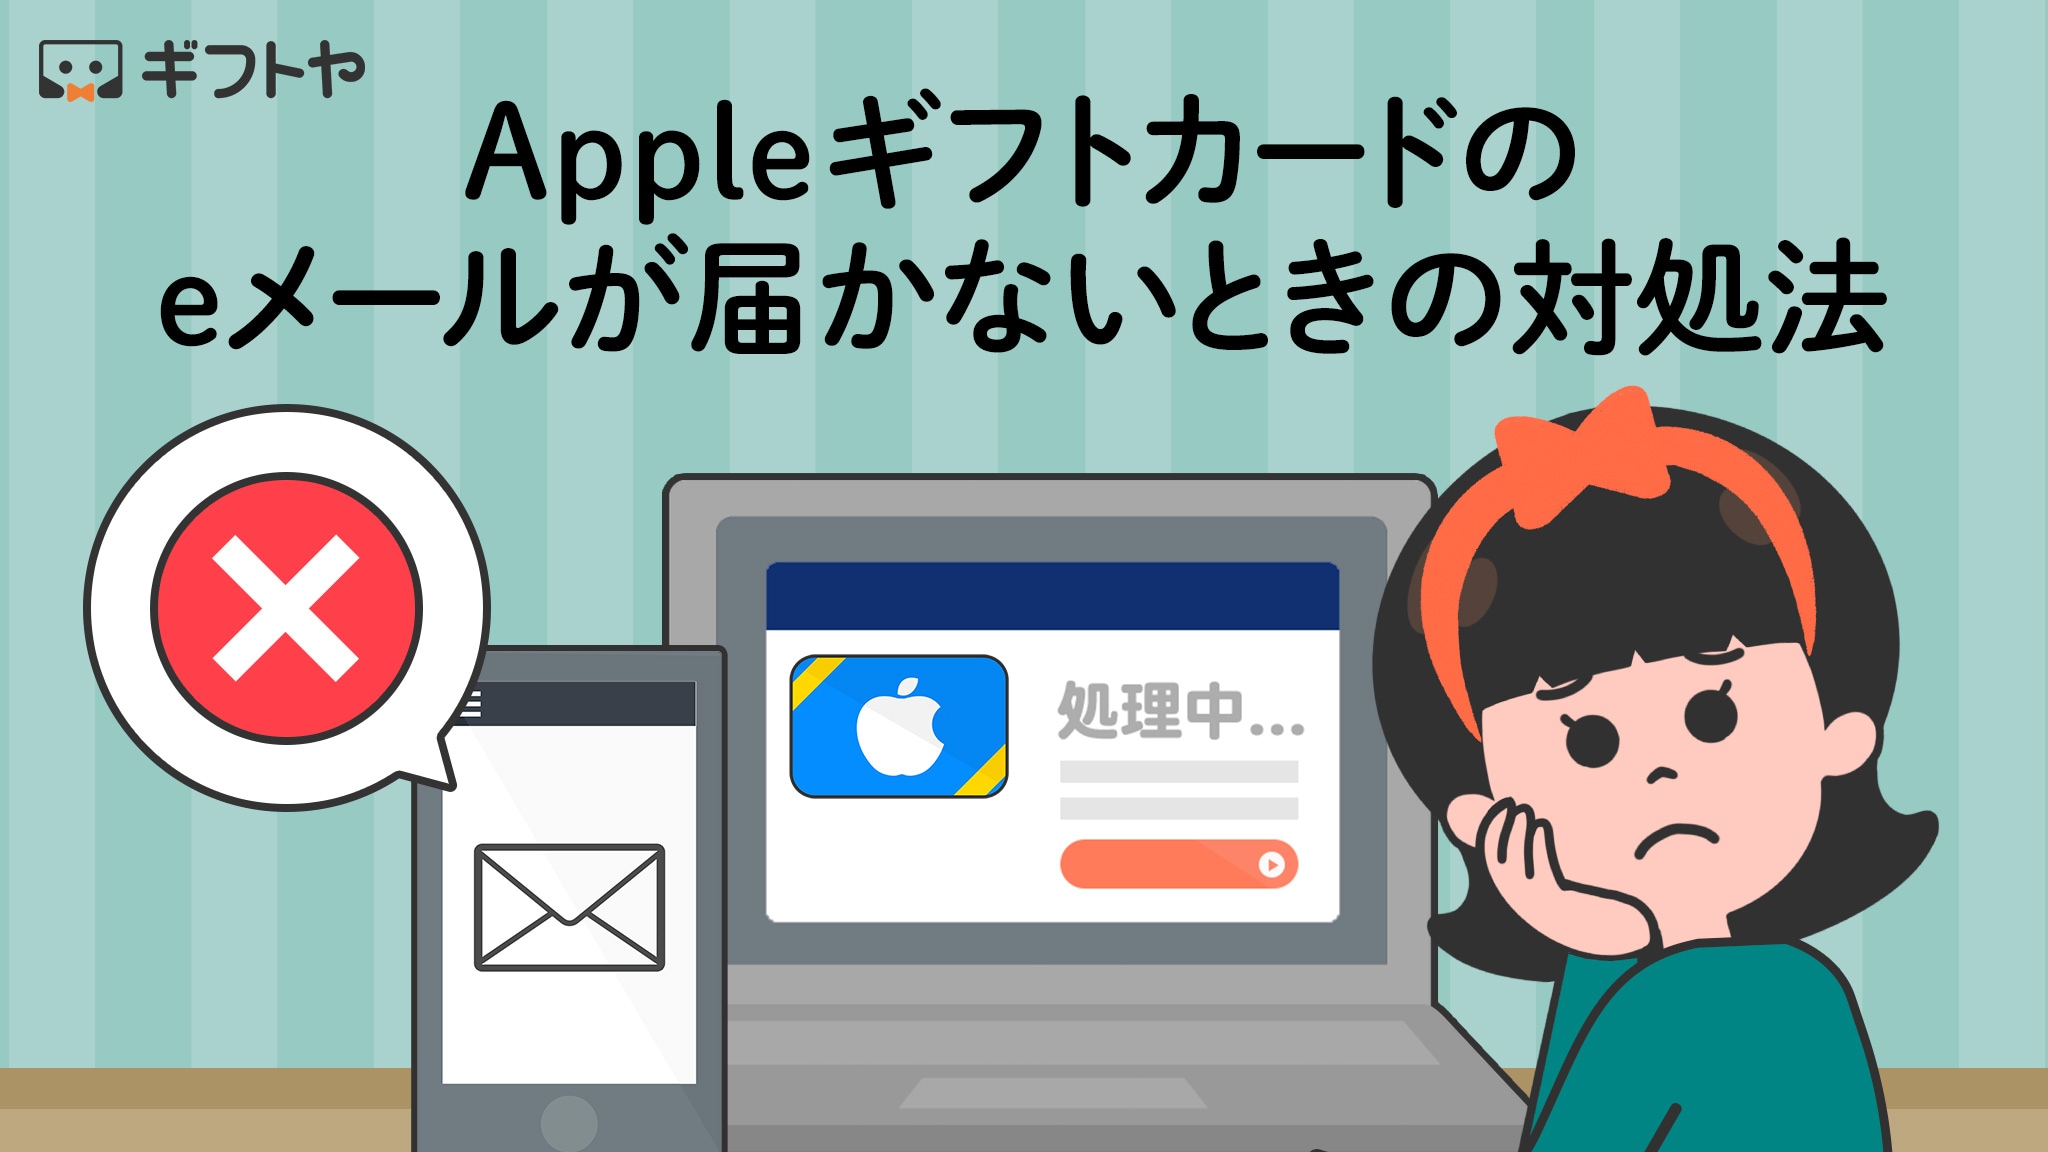 Appleギフトカードのeメールが届かないときや処理中から進まない場合はどうする？対処法や再送信の手順を紹介